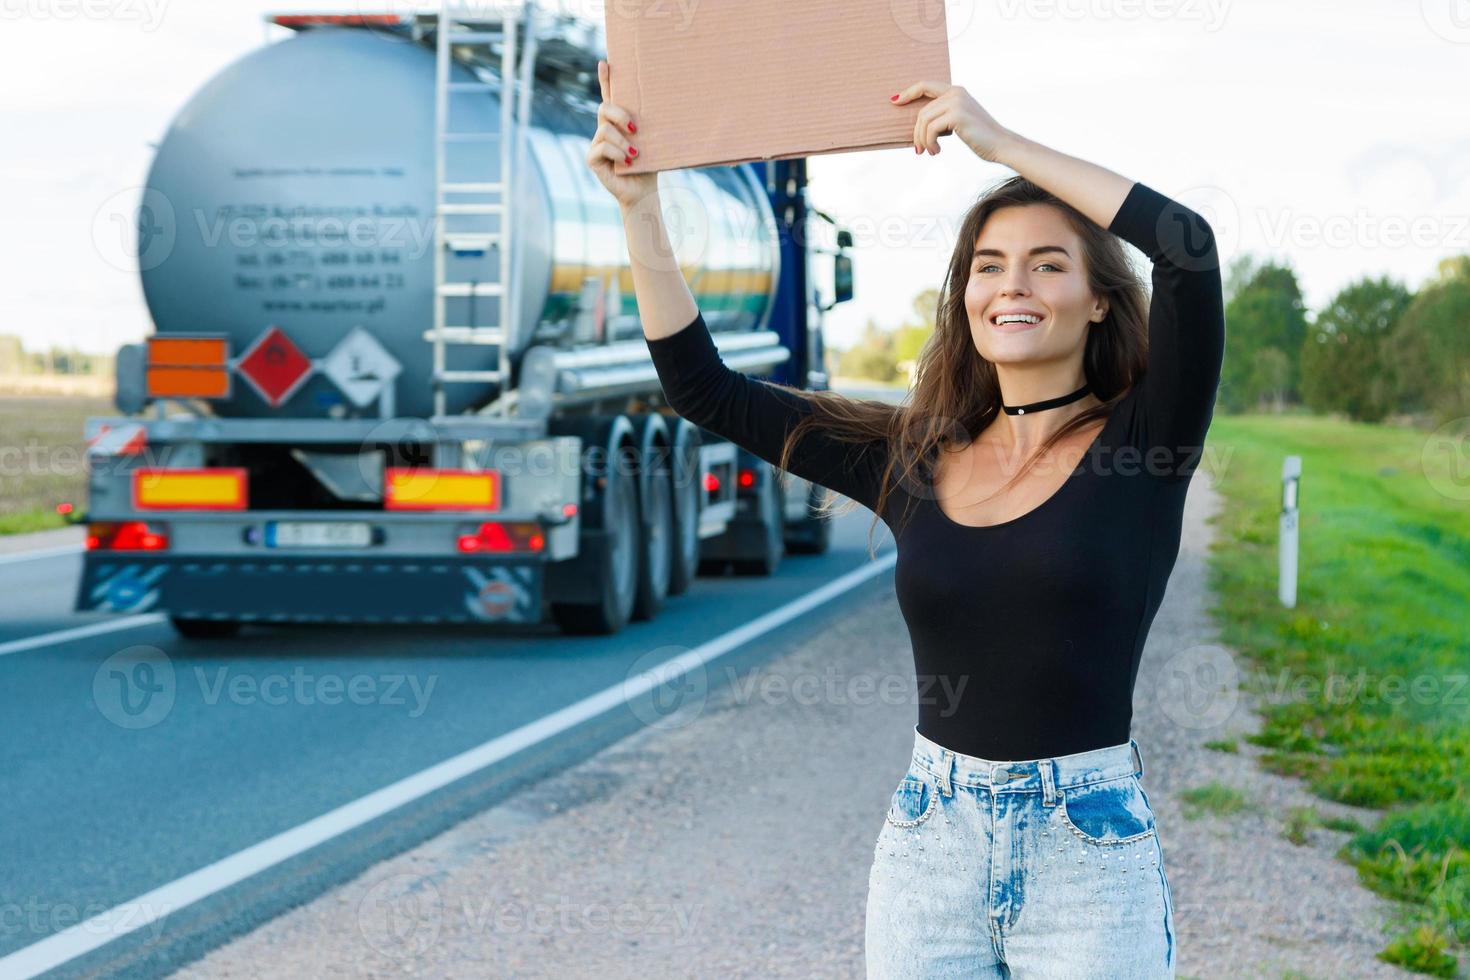 autostopista en la carretera tiene un cartel de cartón en blanco foto